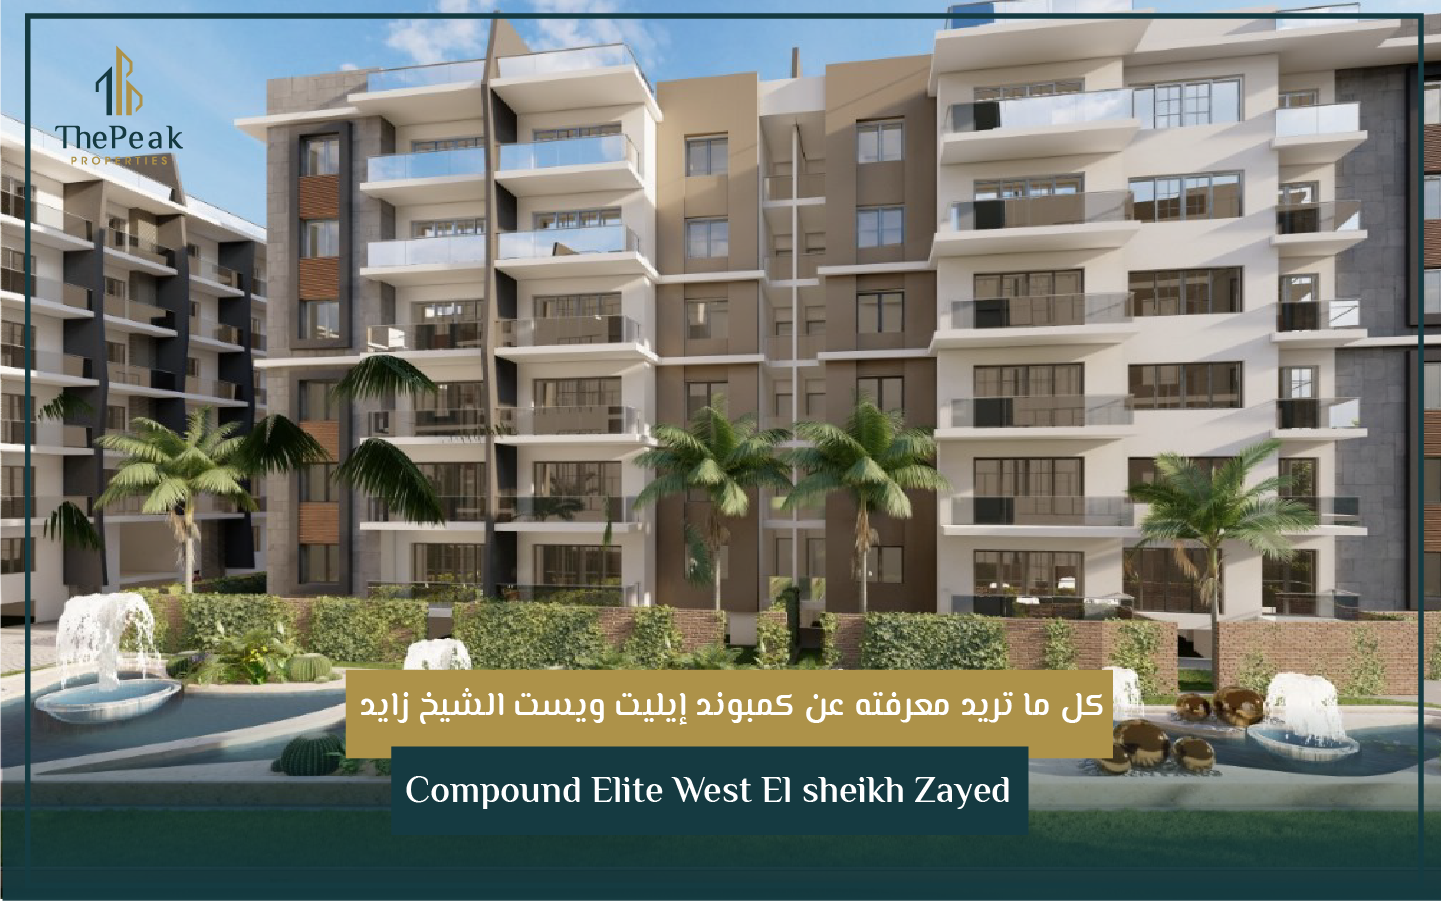 "شقة للبيع بالتقسيط في الشيخ زايد  مساحة 203 متر  مقدم 15 % و تقسيط يصل إلي 8 سنوات  في مشروع Compound Elite West El sheikh Zayed" | THE PEAK PROPERTIES